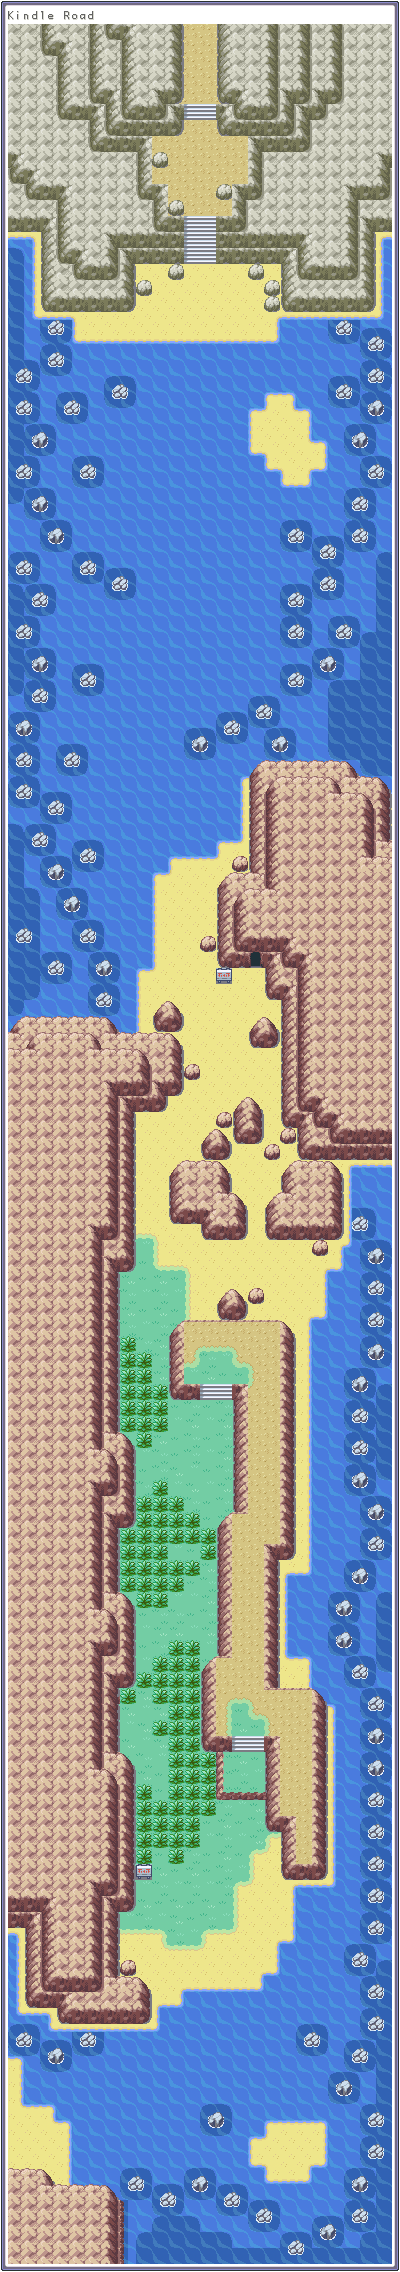 Pokémon FireRed / LeafGreen - Kindle Road